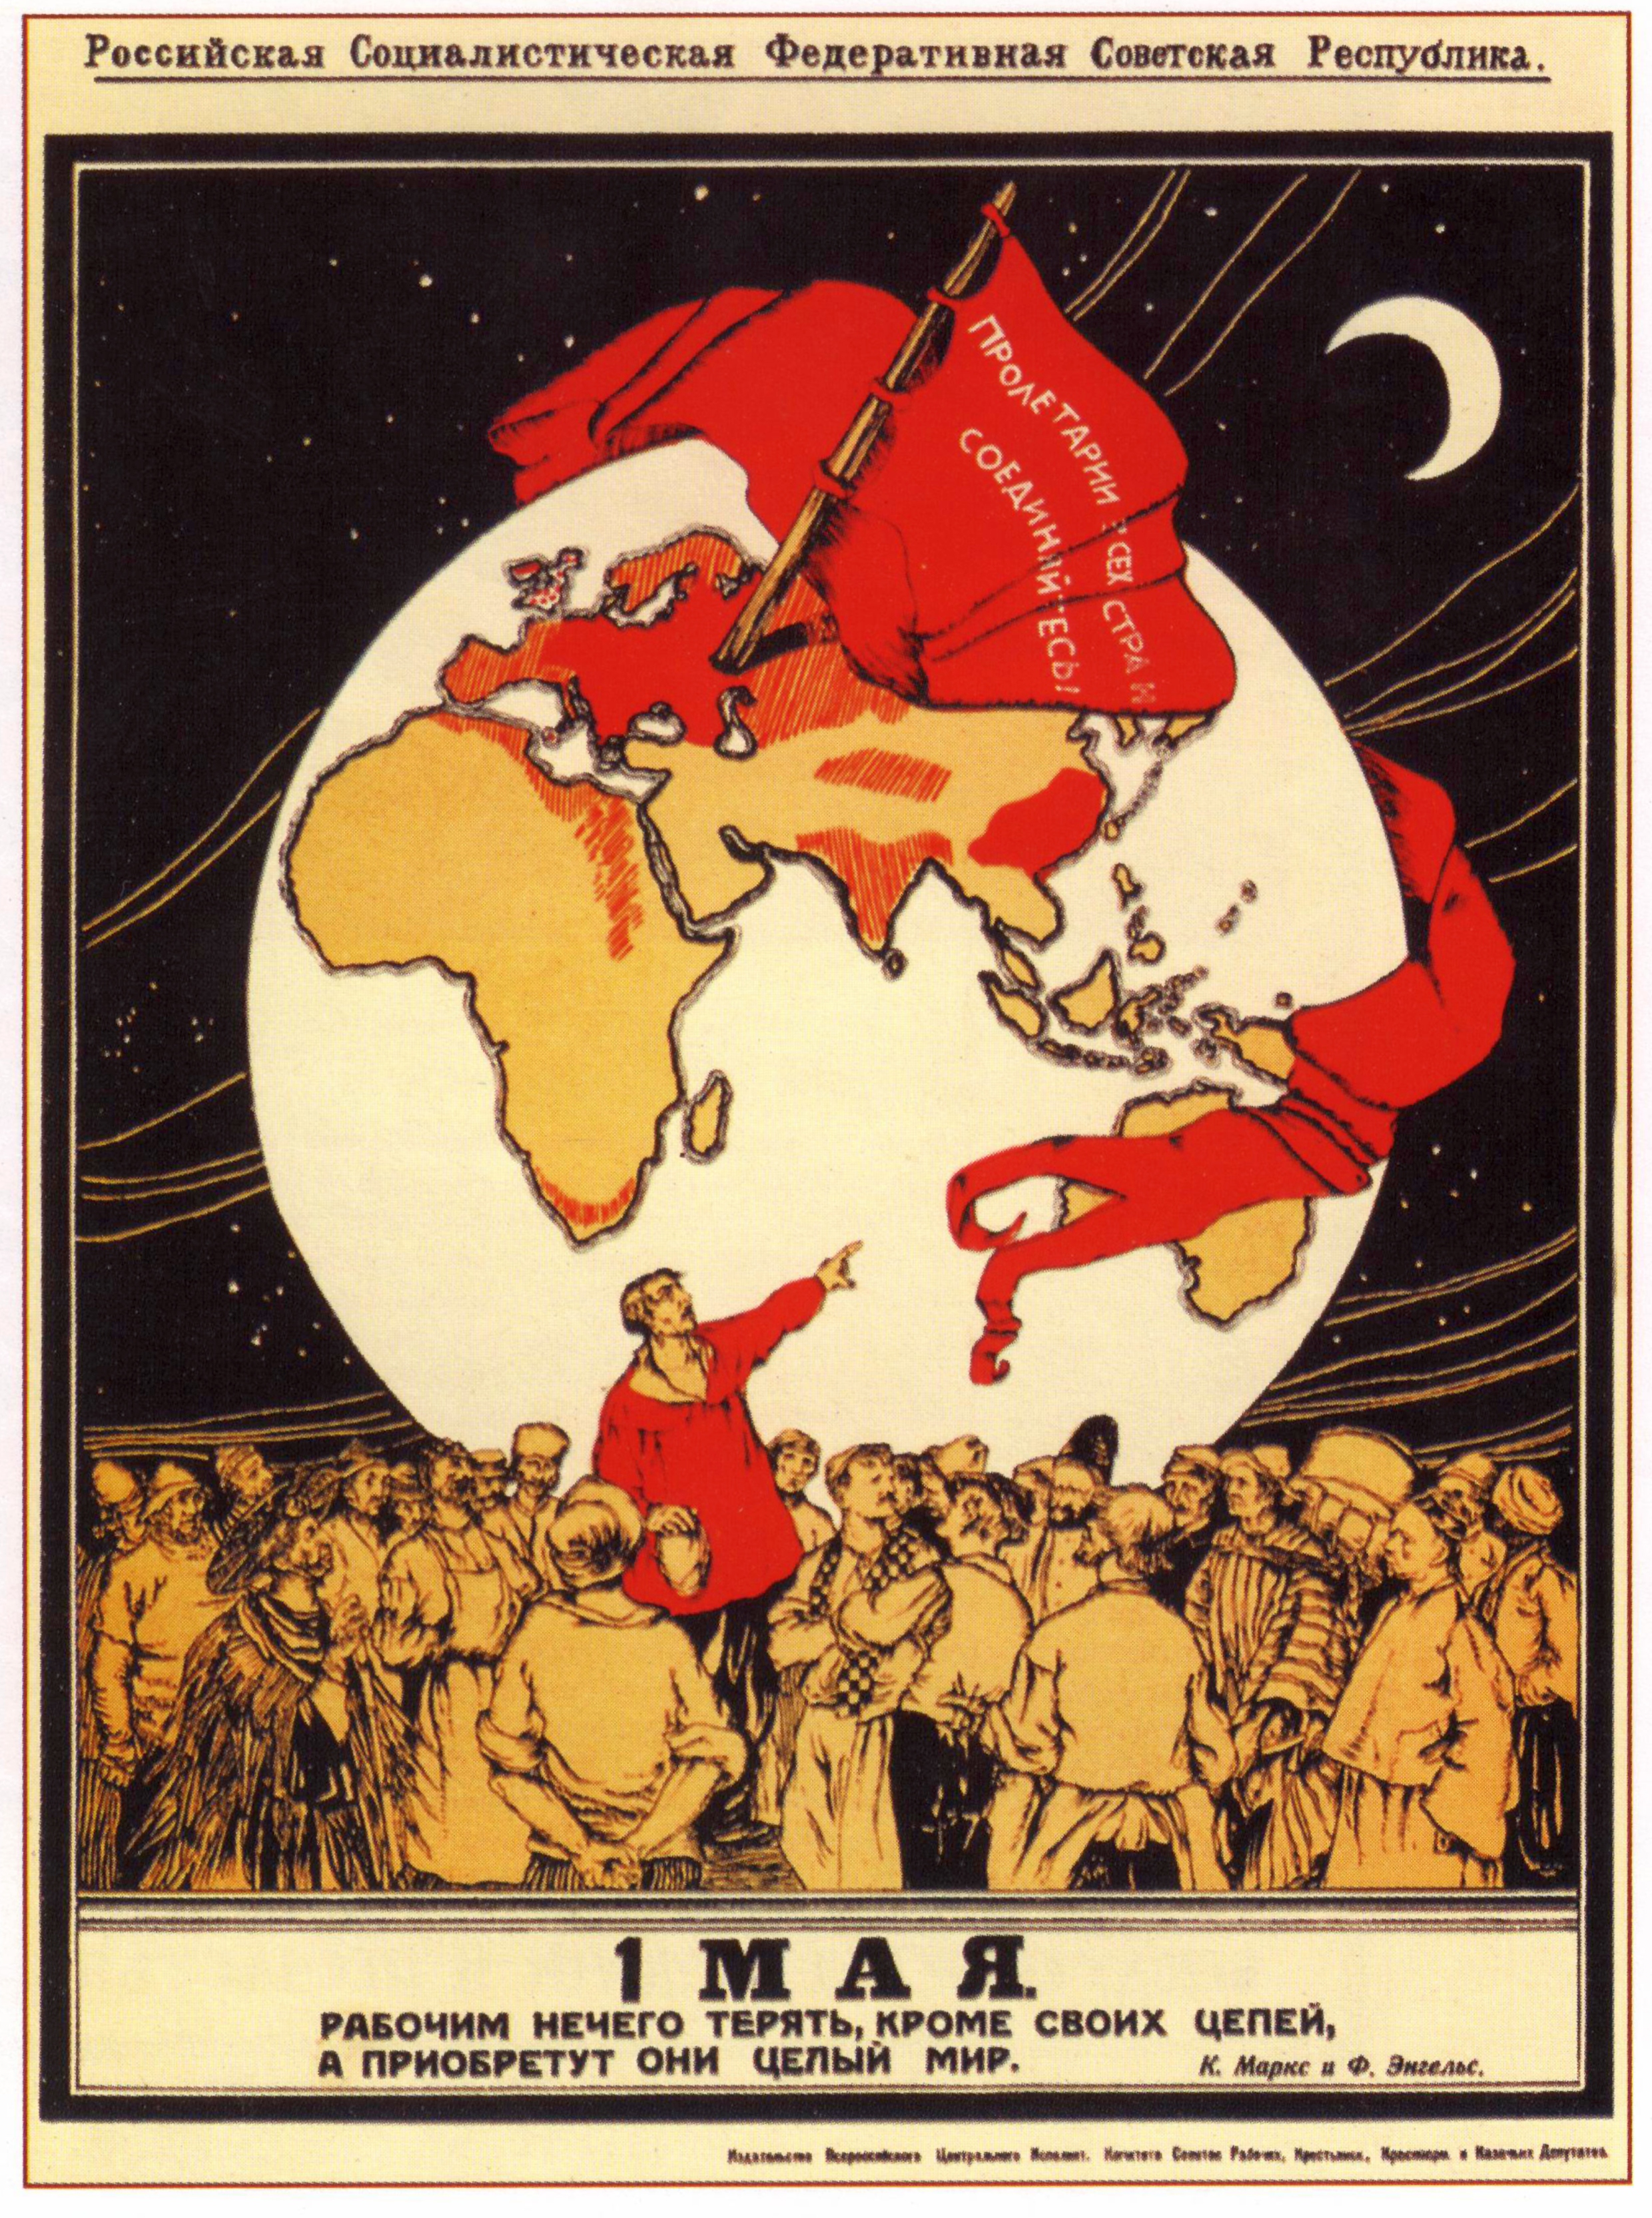 蘇俄1920年代五一勞動節海報：紅旗上書「全世界無產者，聯合起來！」「五月一日」 「無產者在這個革命中失去的只是鎖鏈。他們獲得的將是整個世界。」 ——馬克思、恩格斯